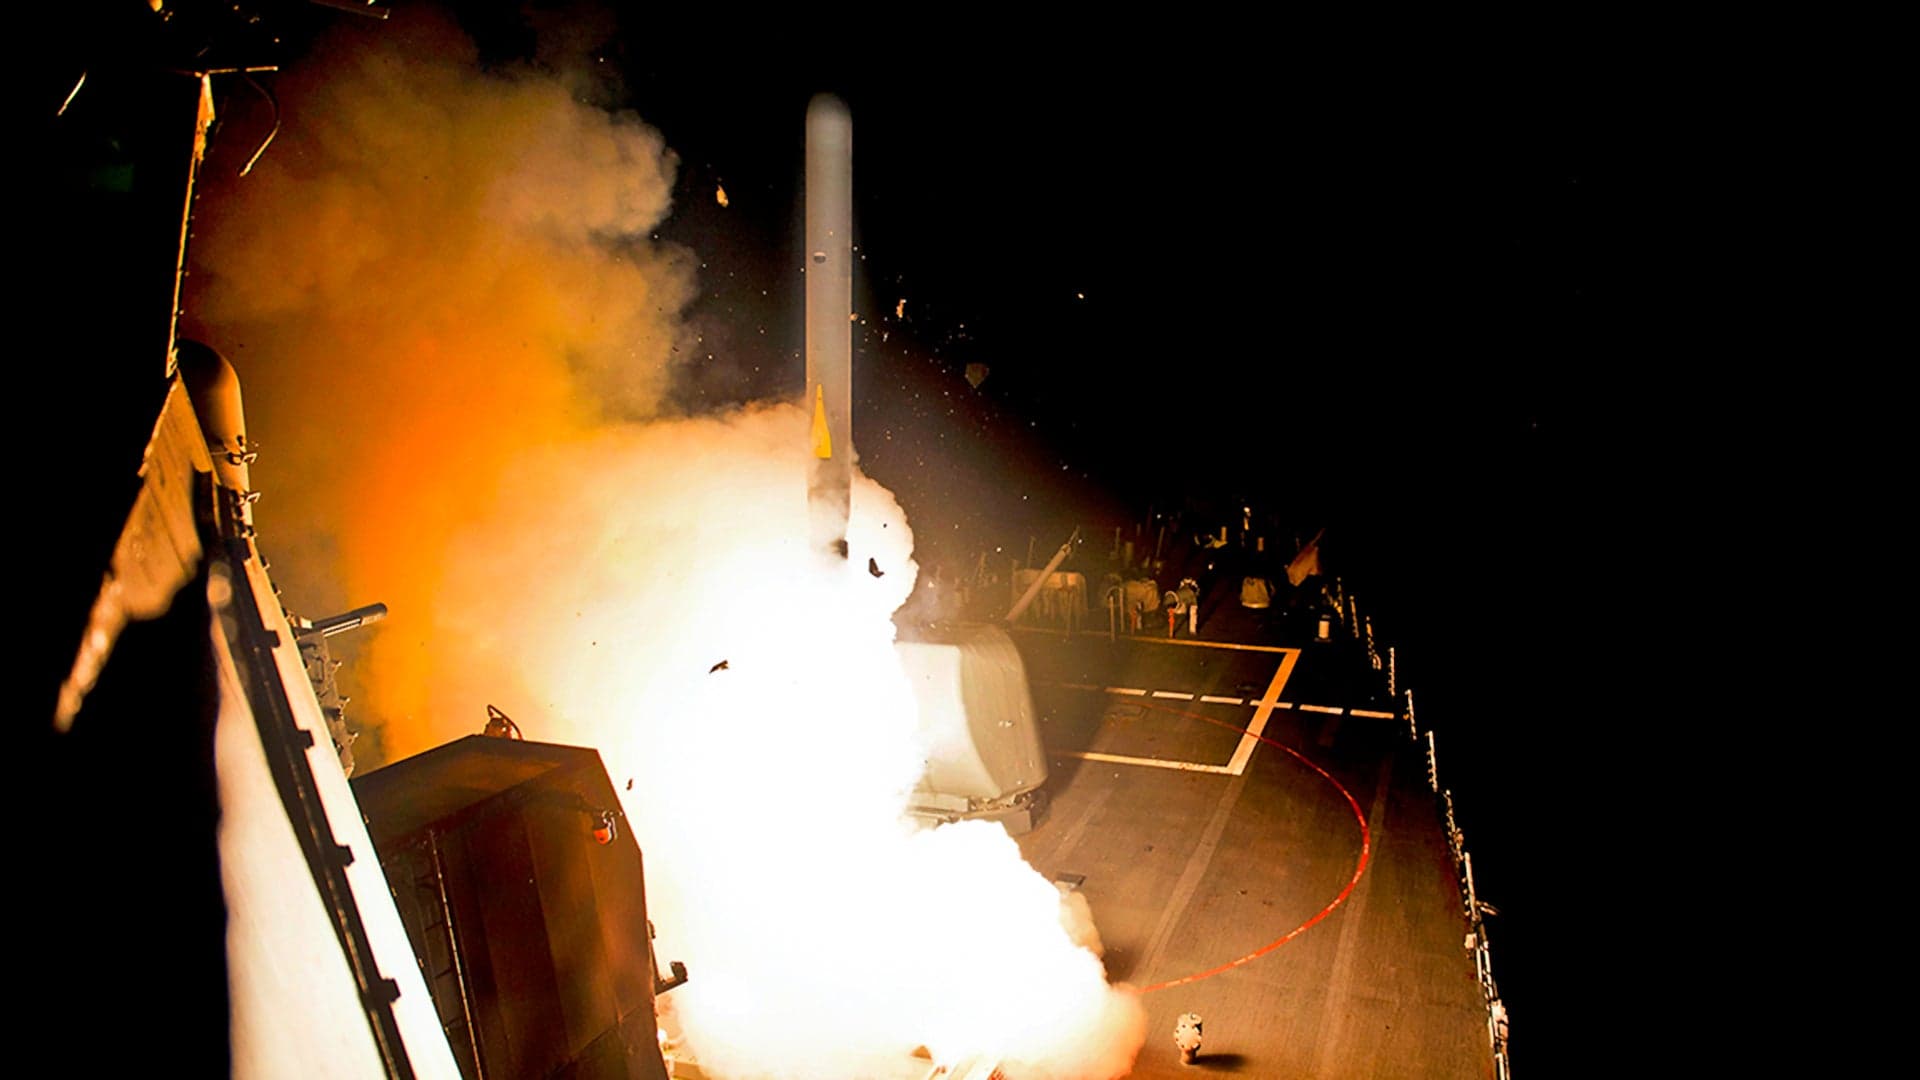 Tomahawk Cruise Missiles Pummel Houthi Controlled Radar Sites In Yemen